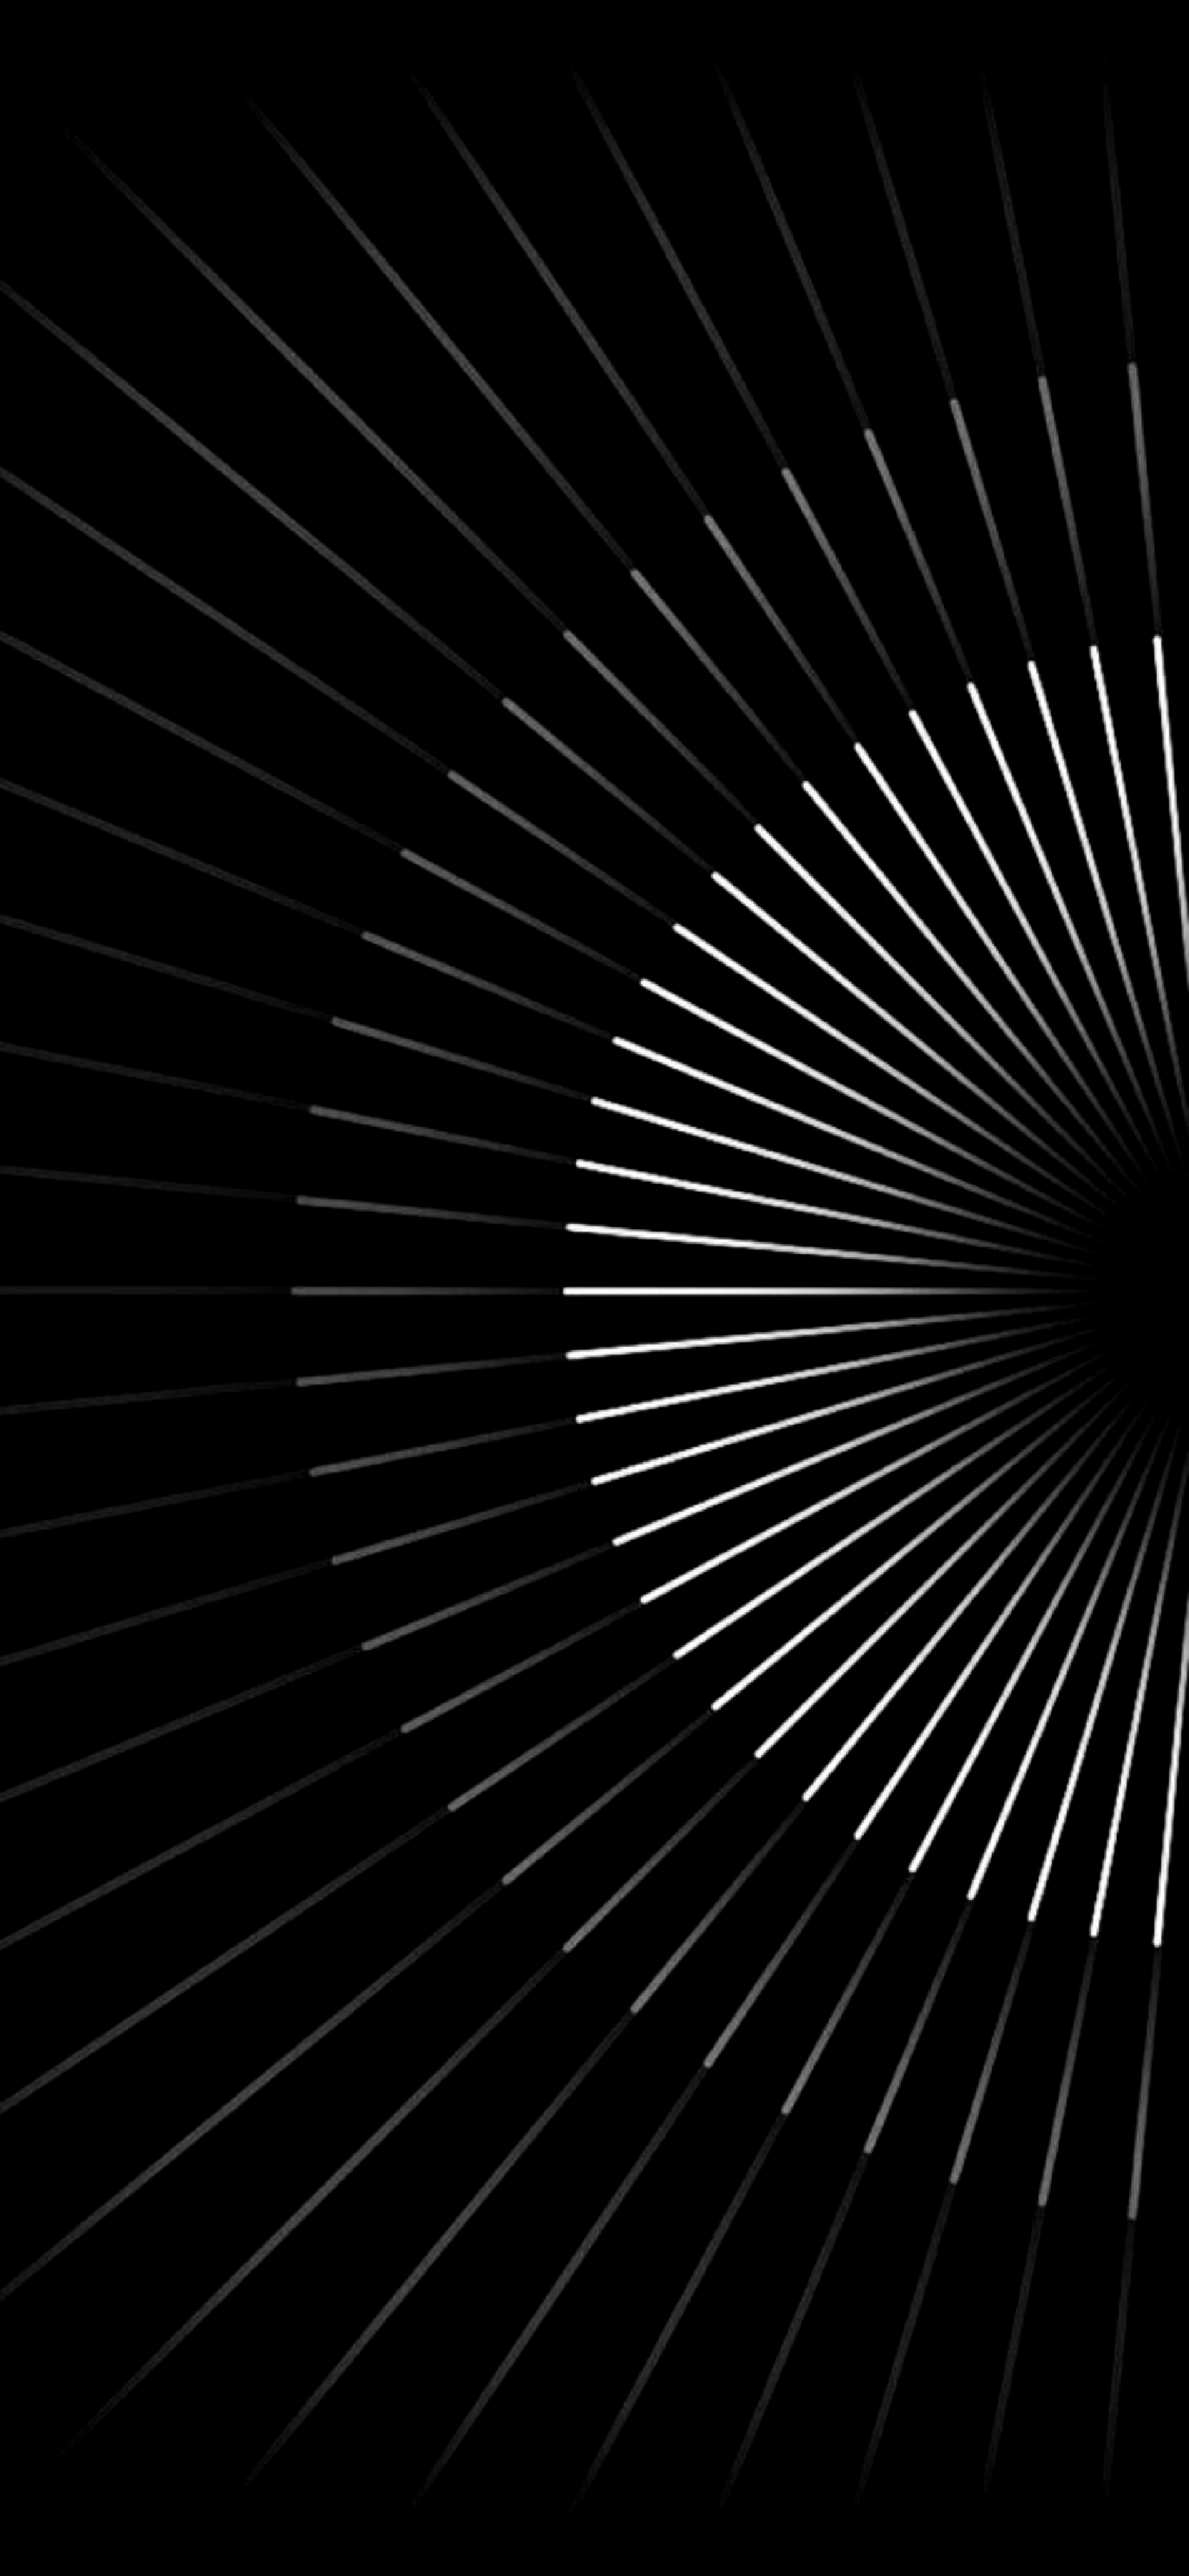 Hình nền ảo giác quang học 3D sọc đen trắng